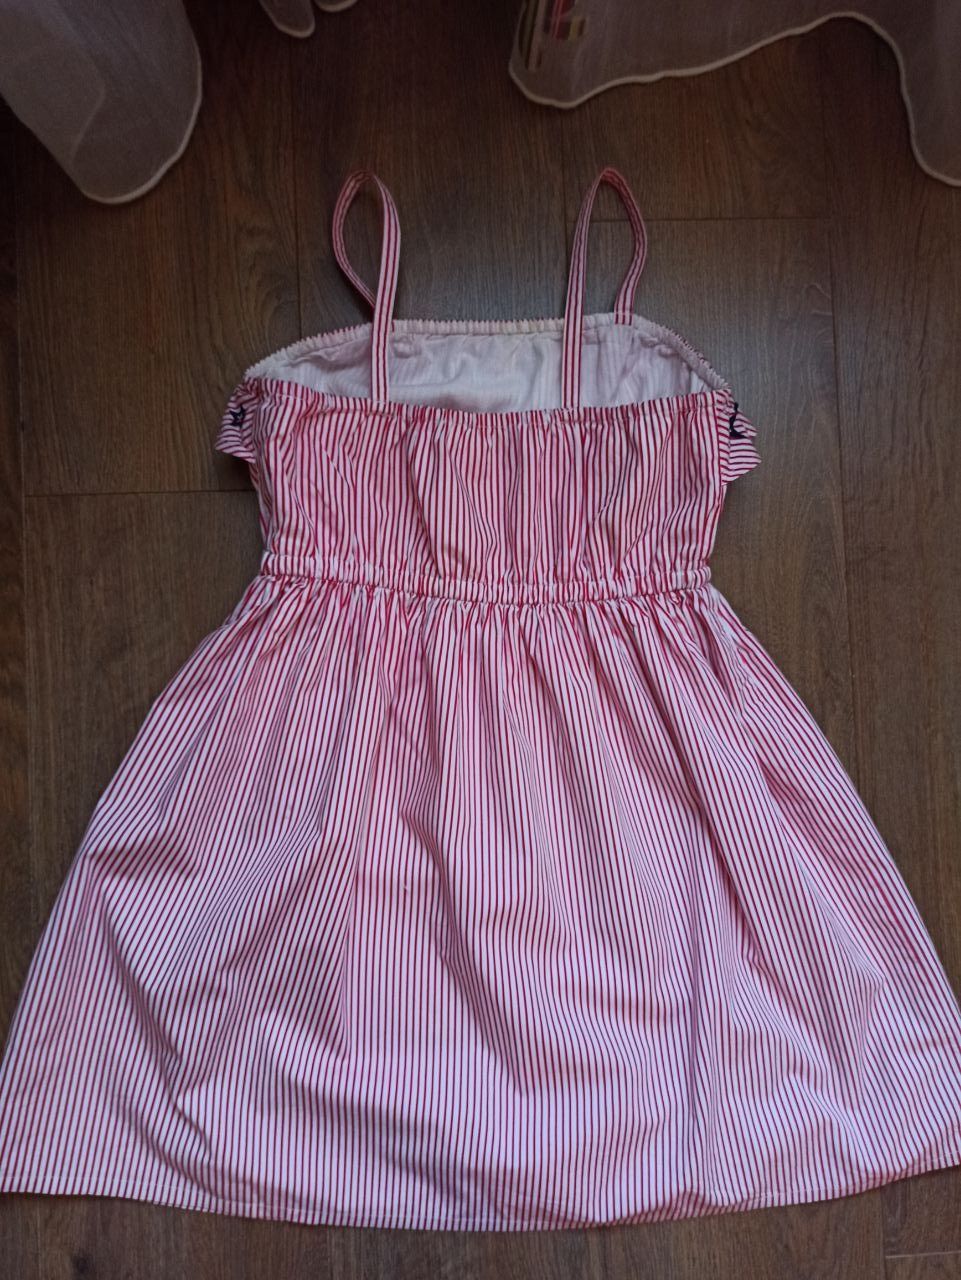 Продам летнее платье на девочку,  фирма  GYMBOREE  р.12 (8-12 лет)